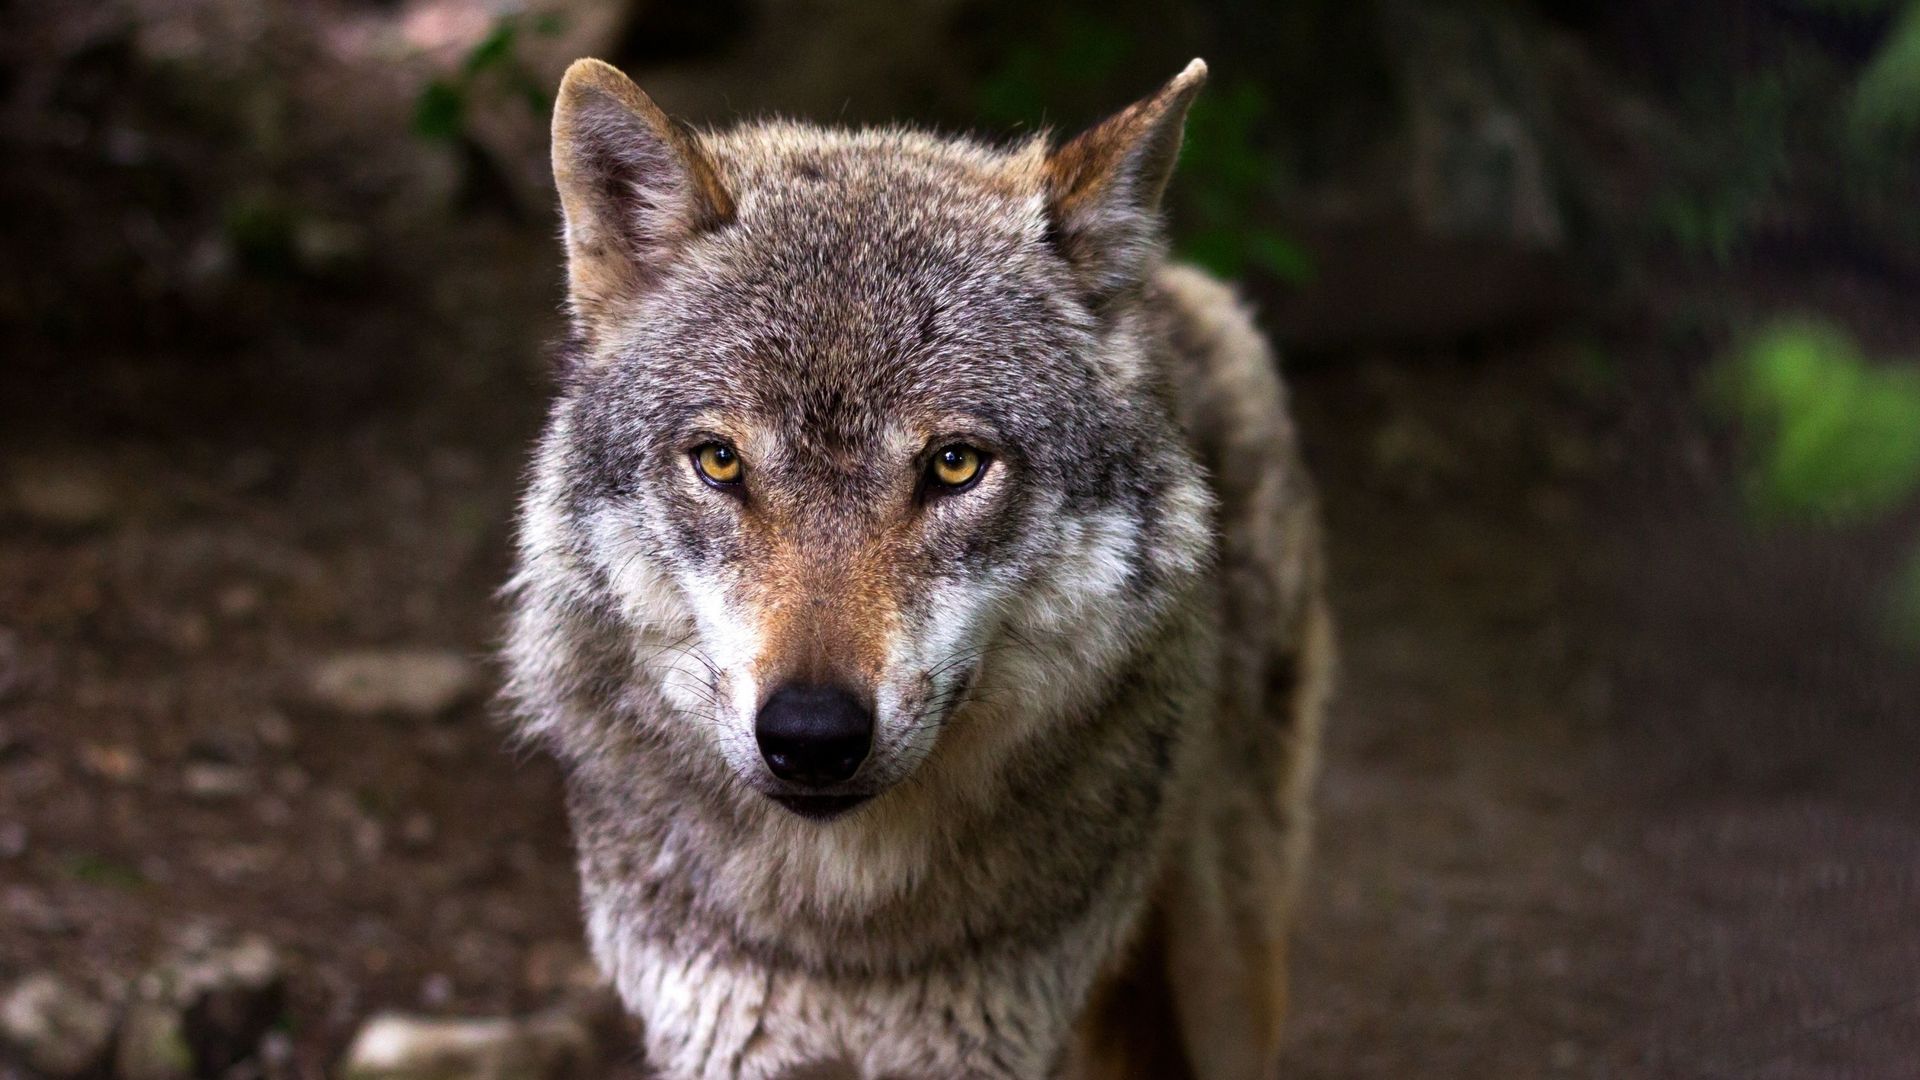 Le loup bientôt moins protégé en Europe ?